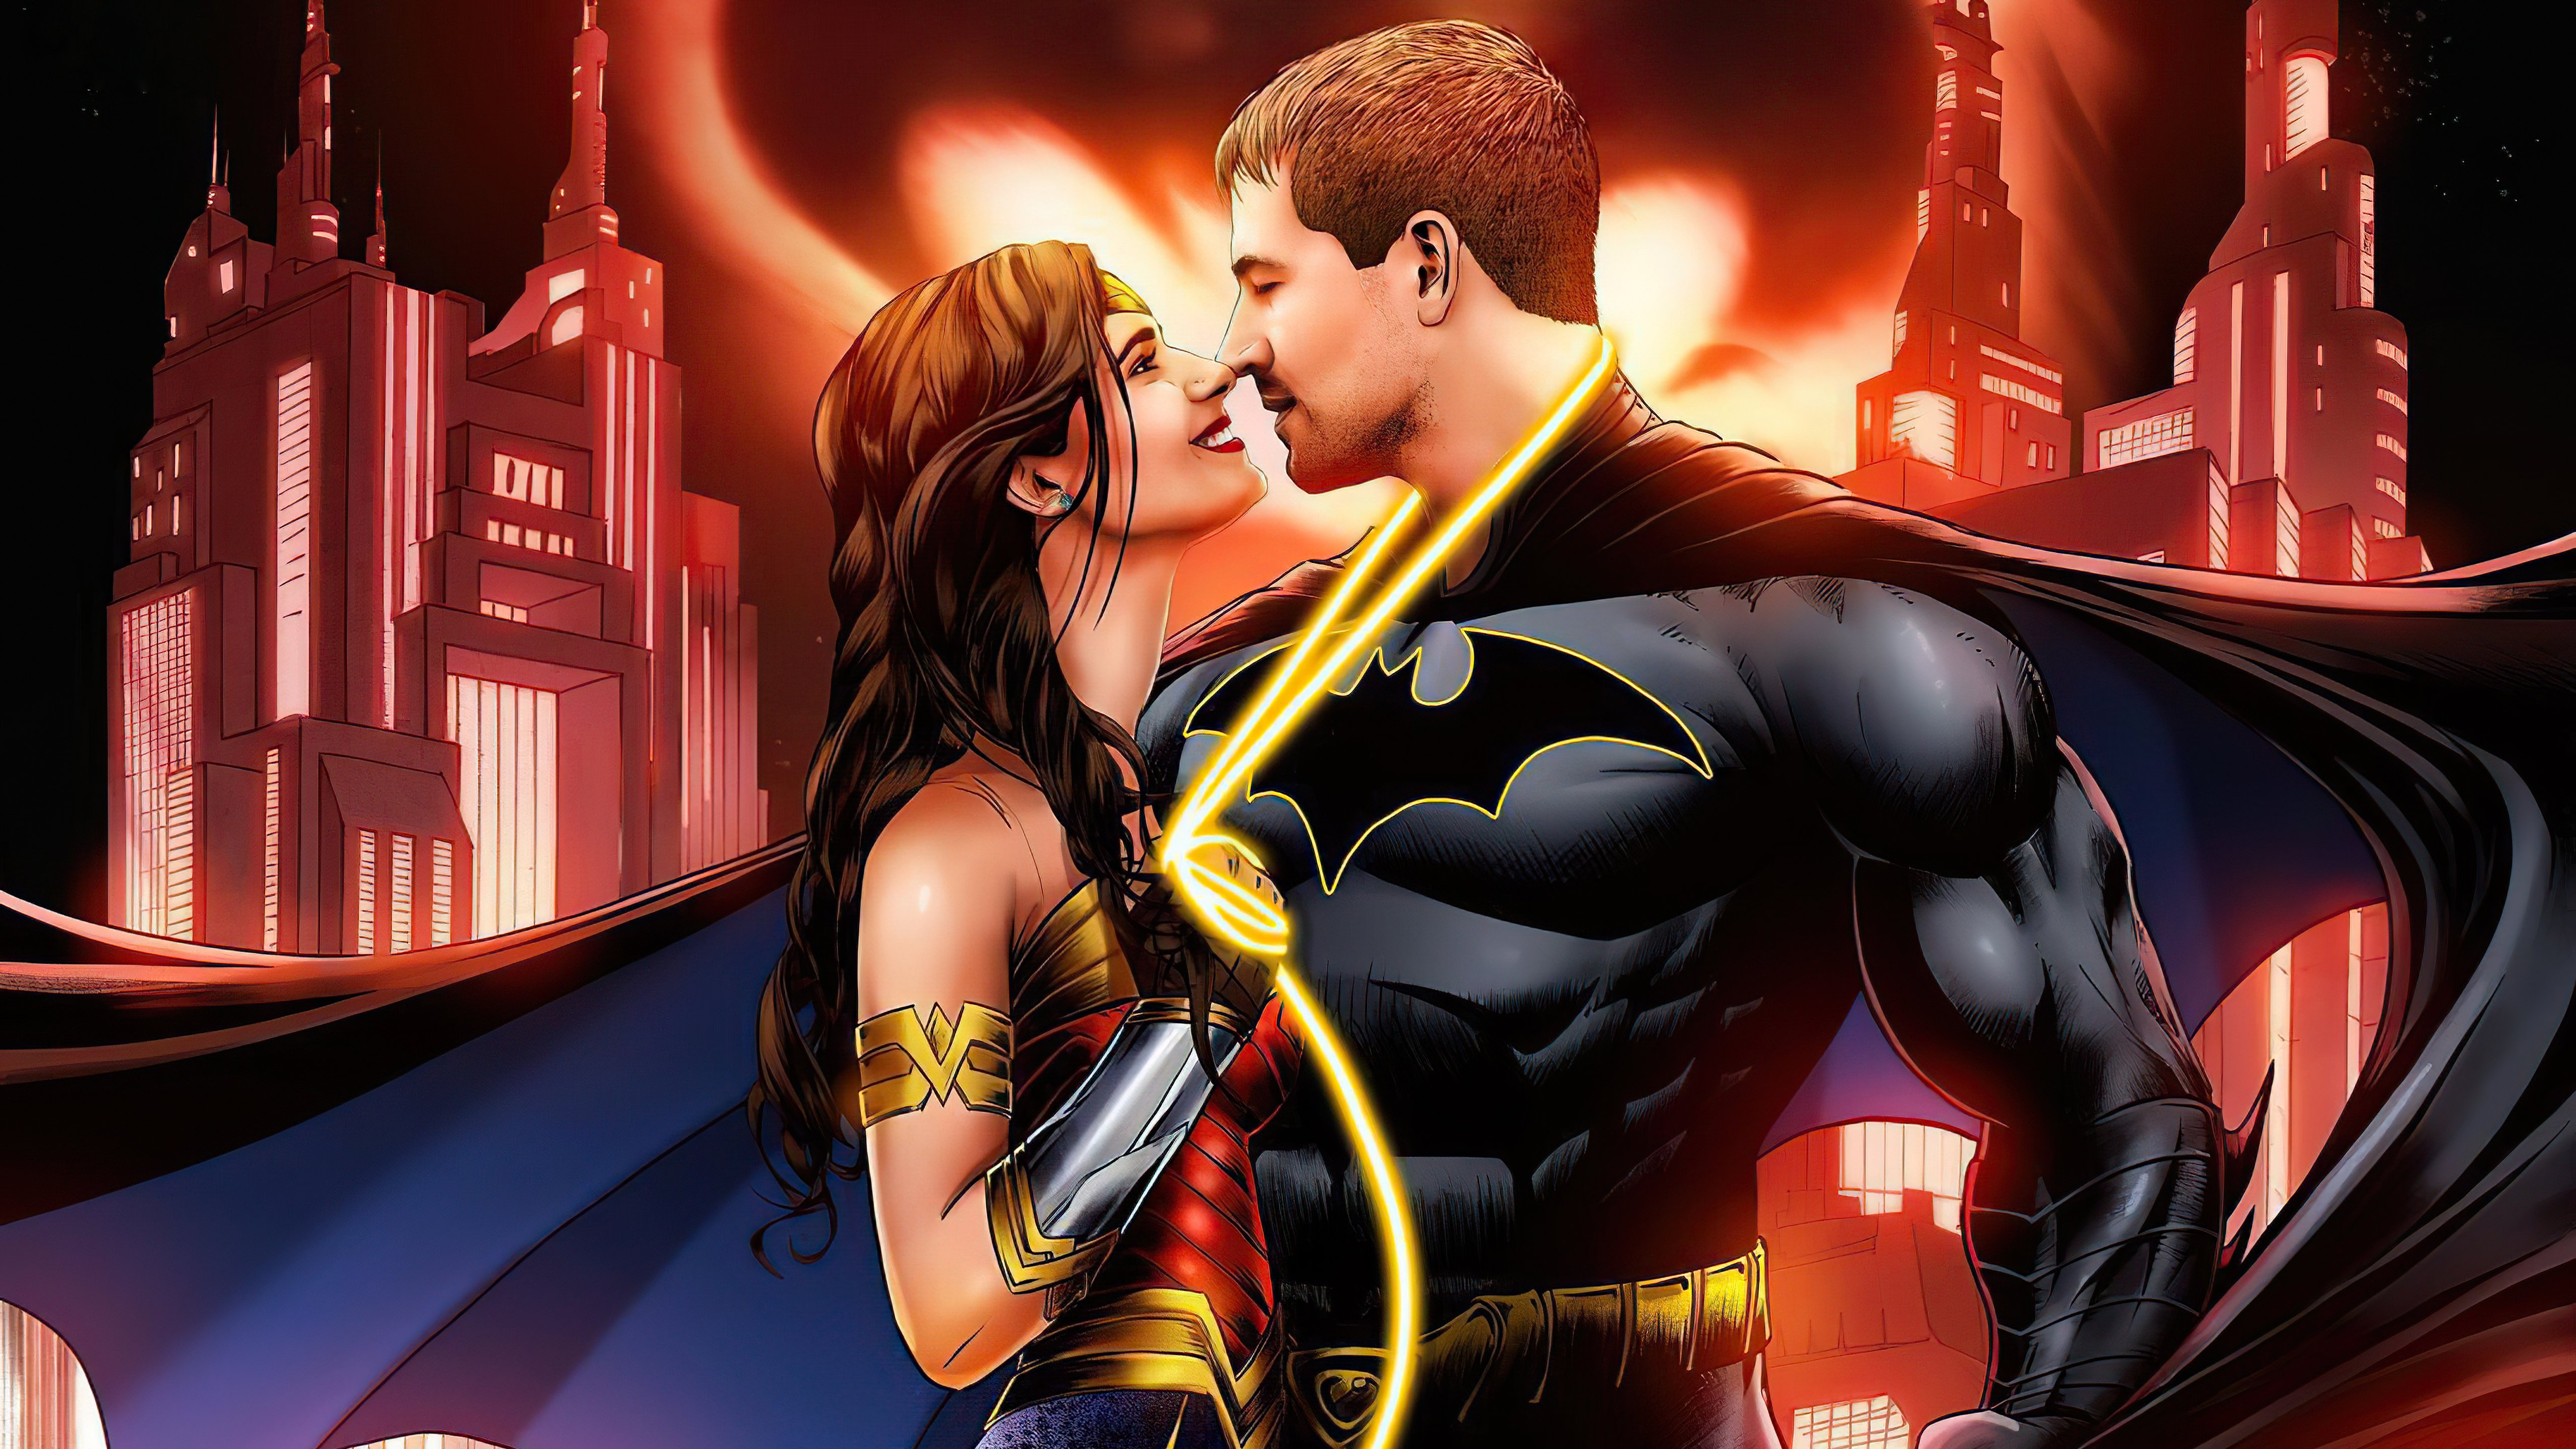 Wallpaper Batman and Wonder Woman in love